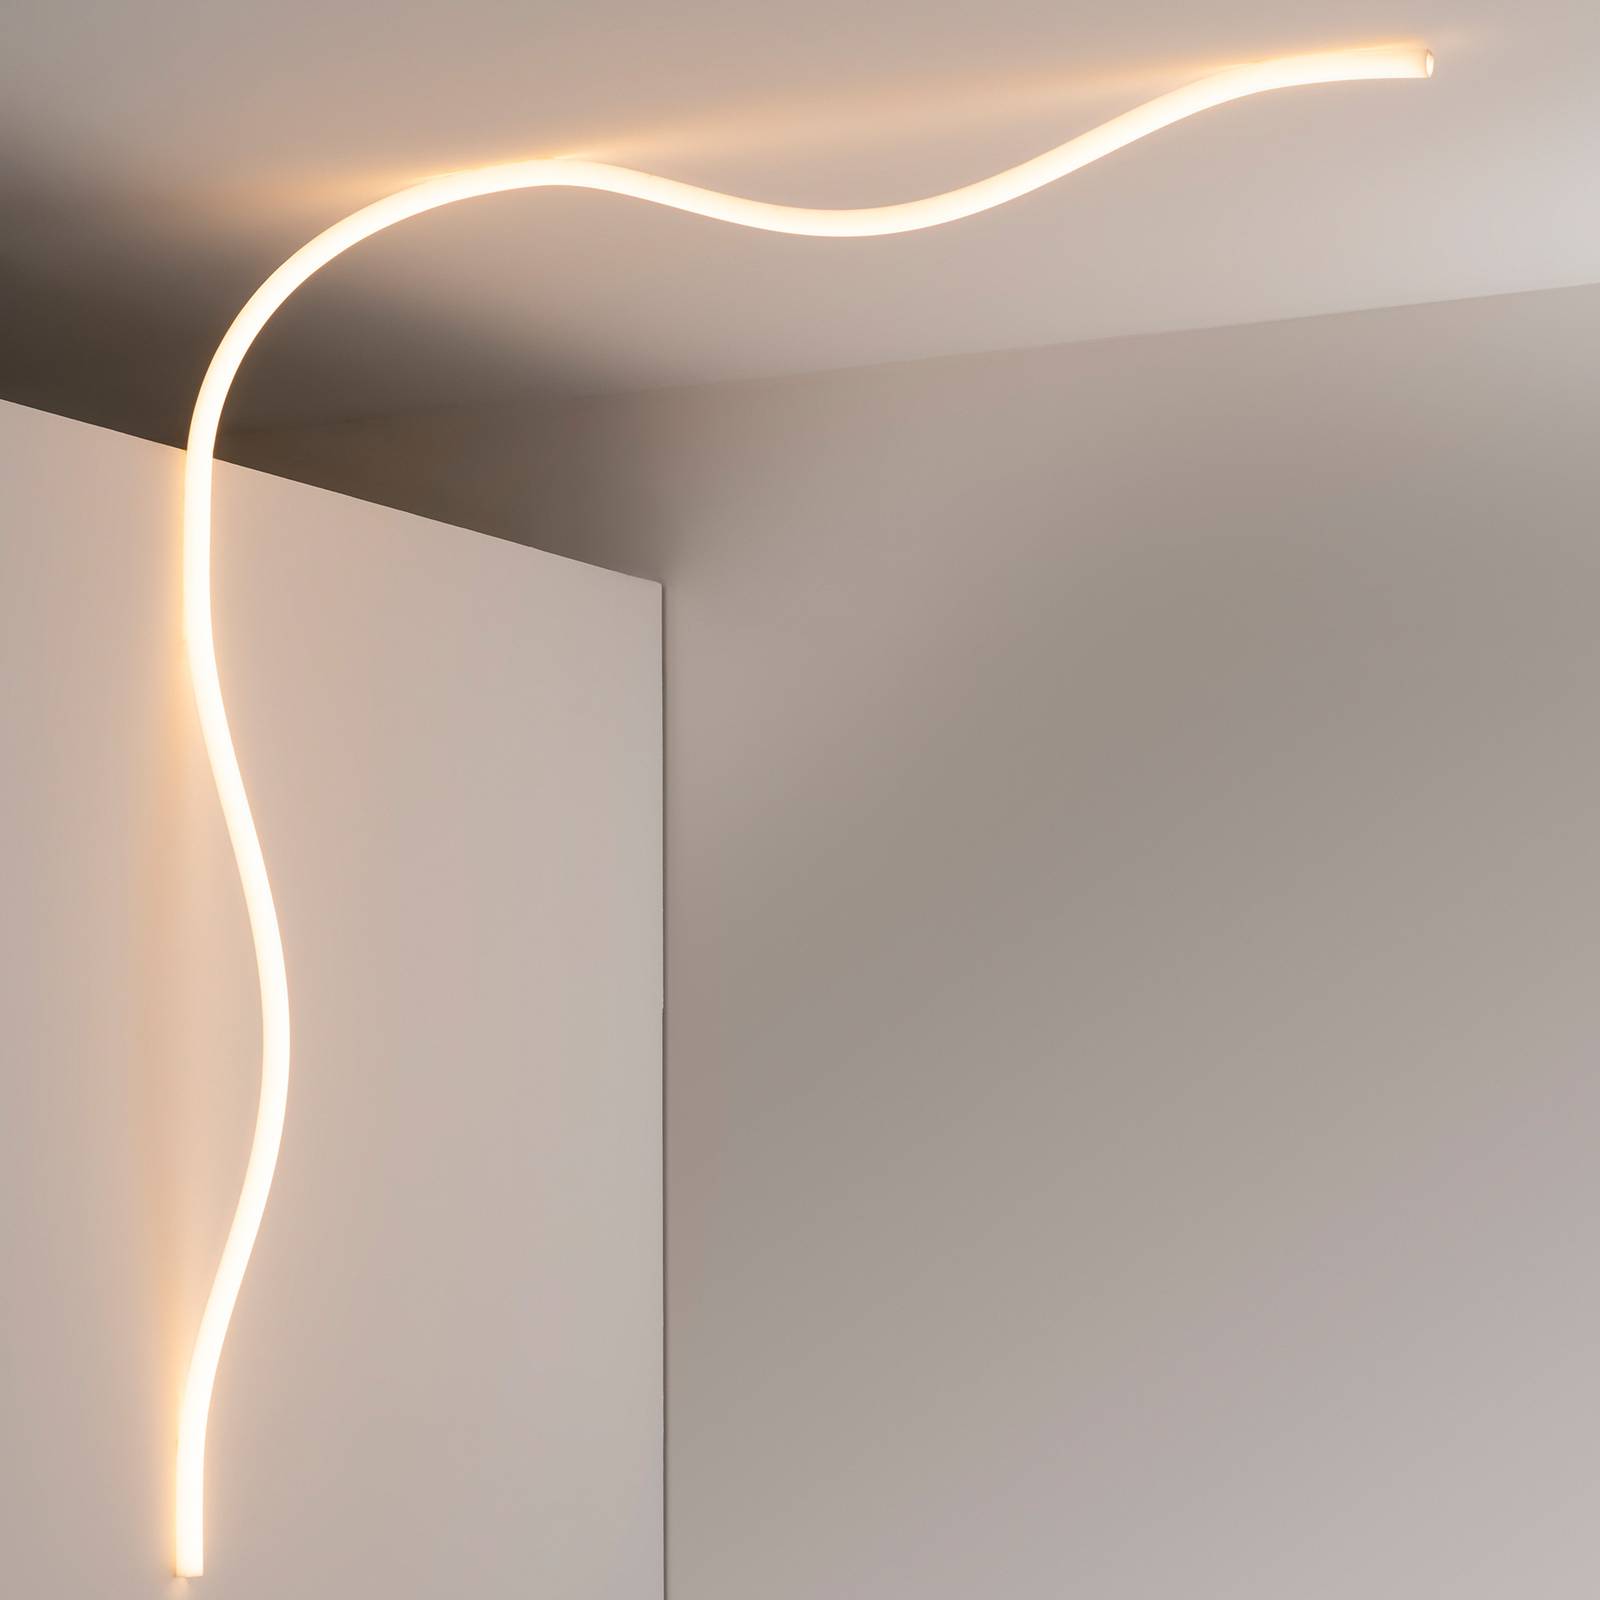 Artemide La linea svetelný LED had, 5 metrov